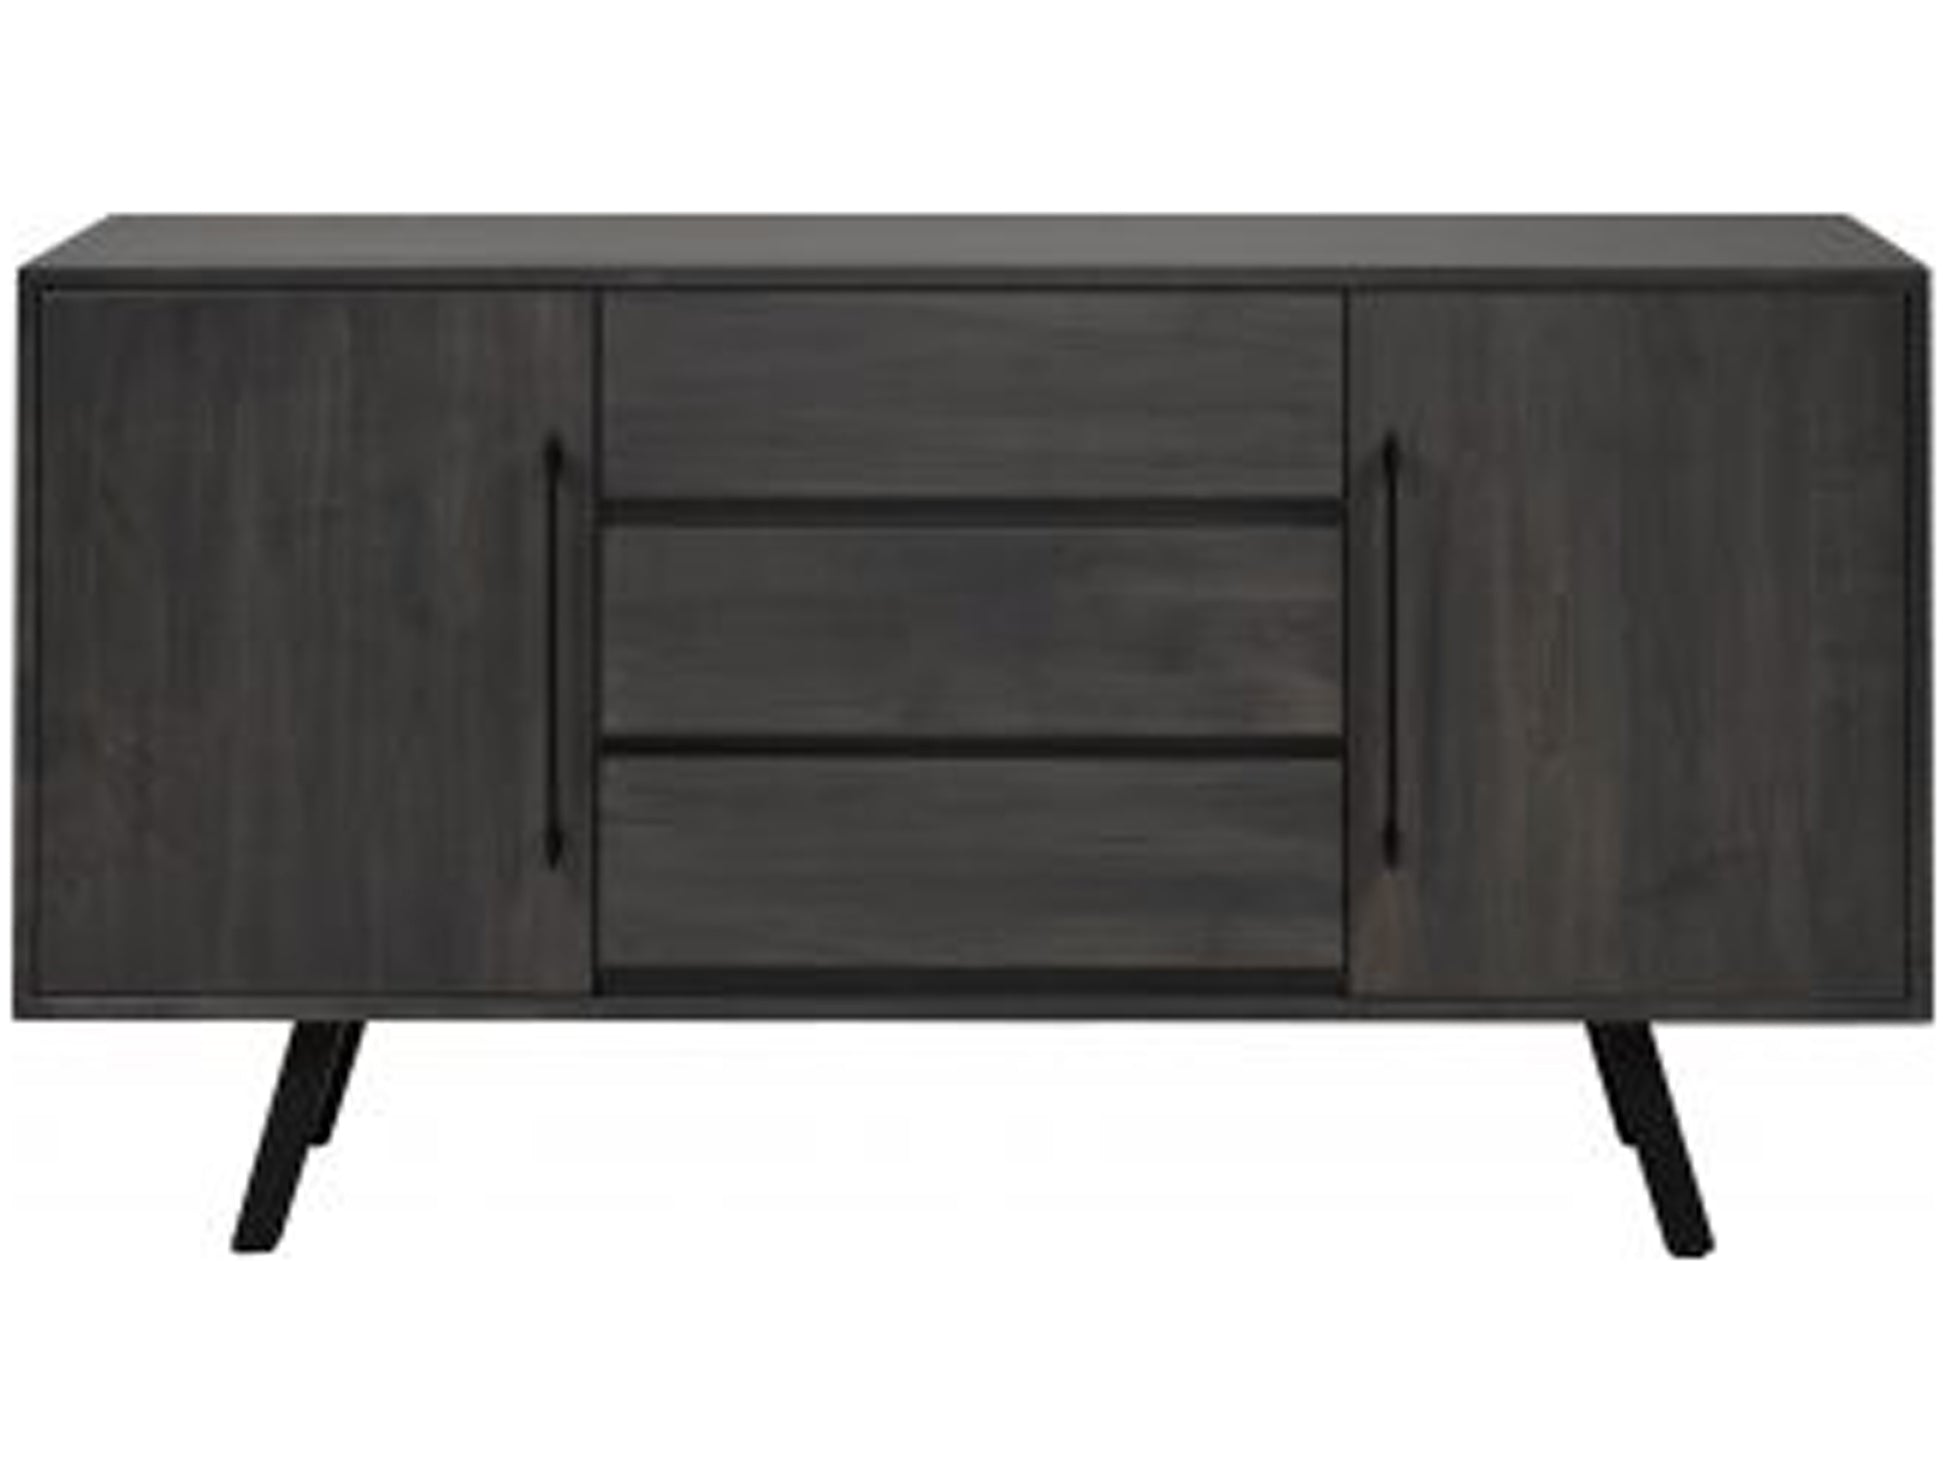 Nordmark server - solid wood, custom built furniture, Canadian made